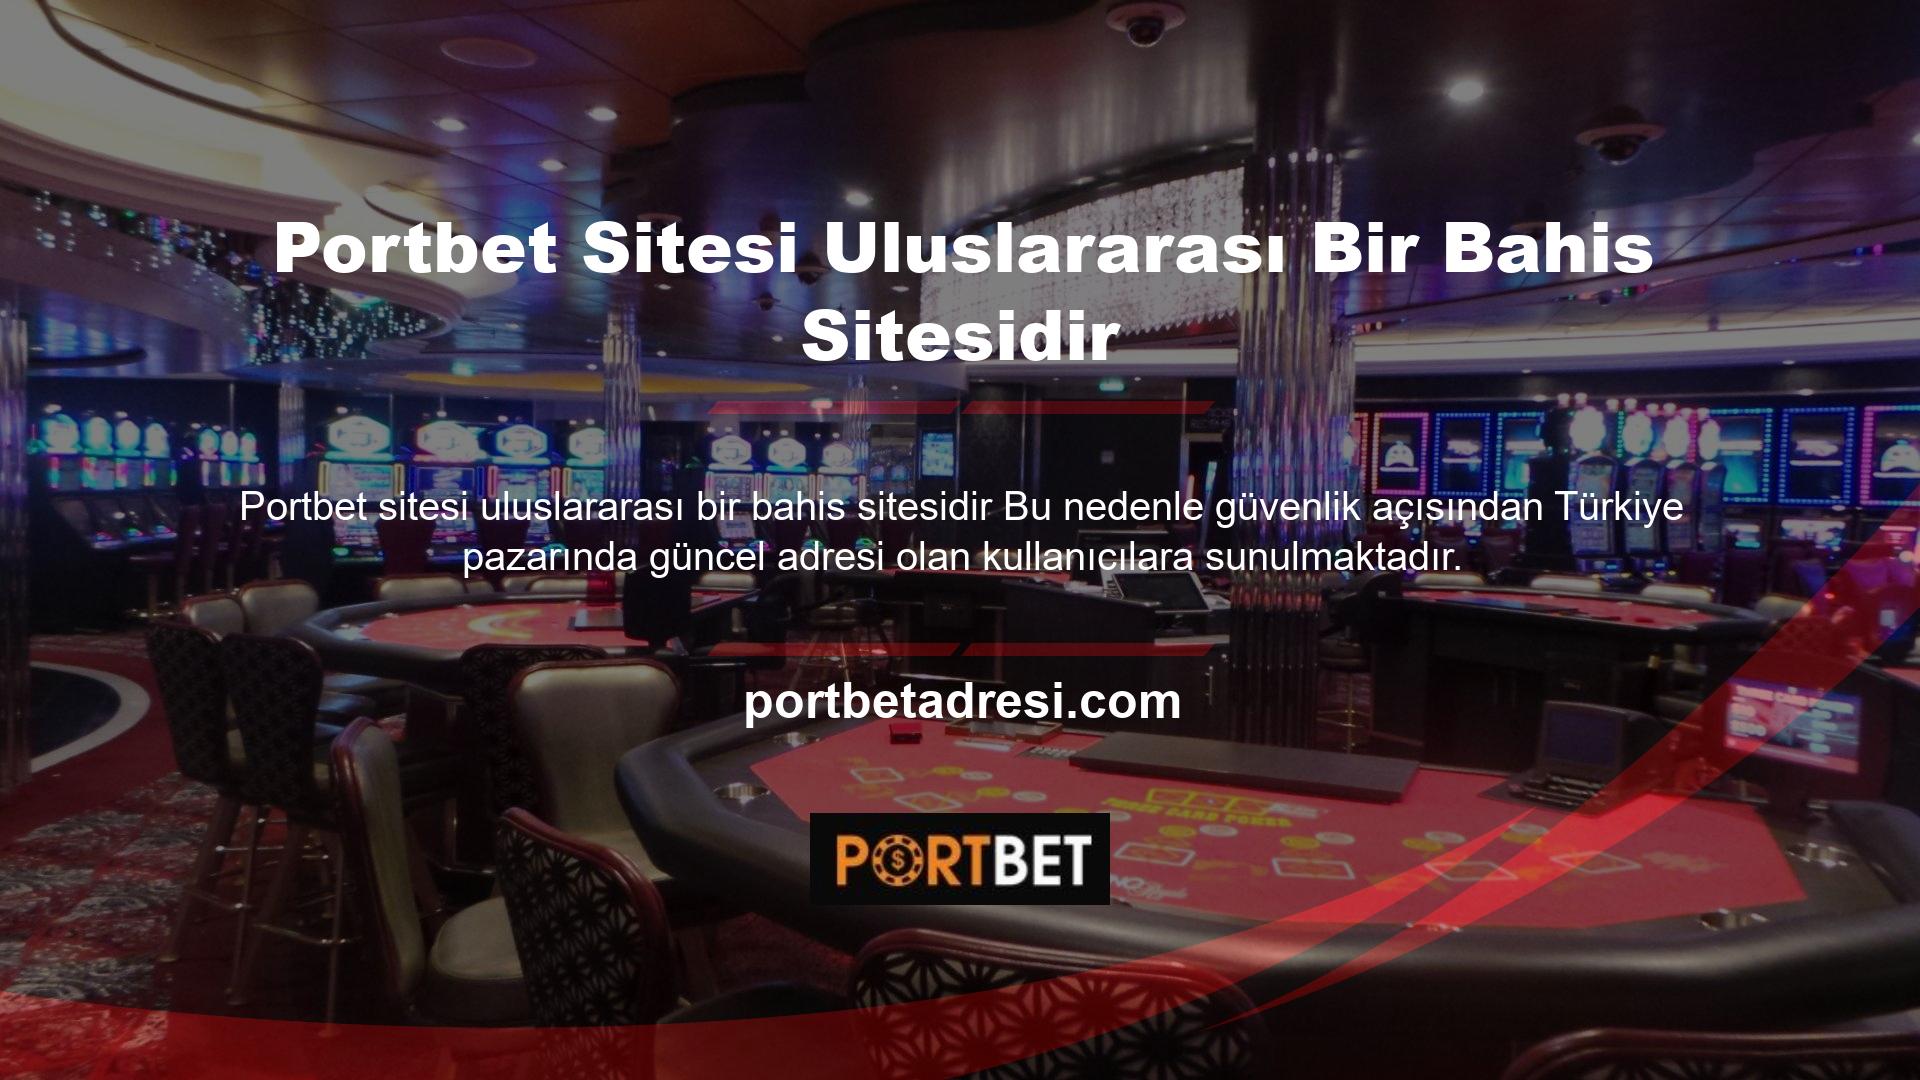 Casino siteleri farklı lisanslara sahiptir ve güvenilirlik açısından oldukça iyidir